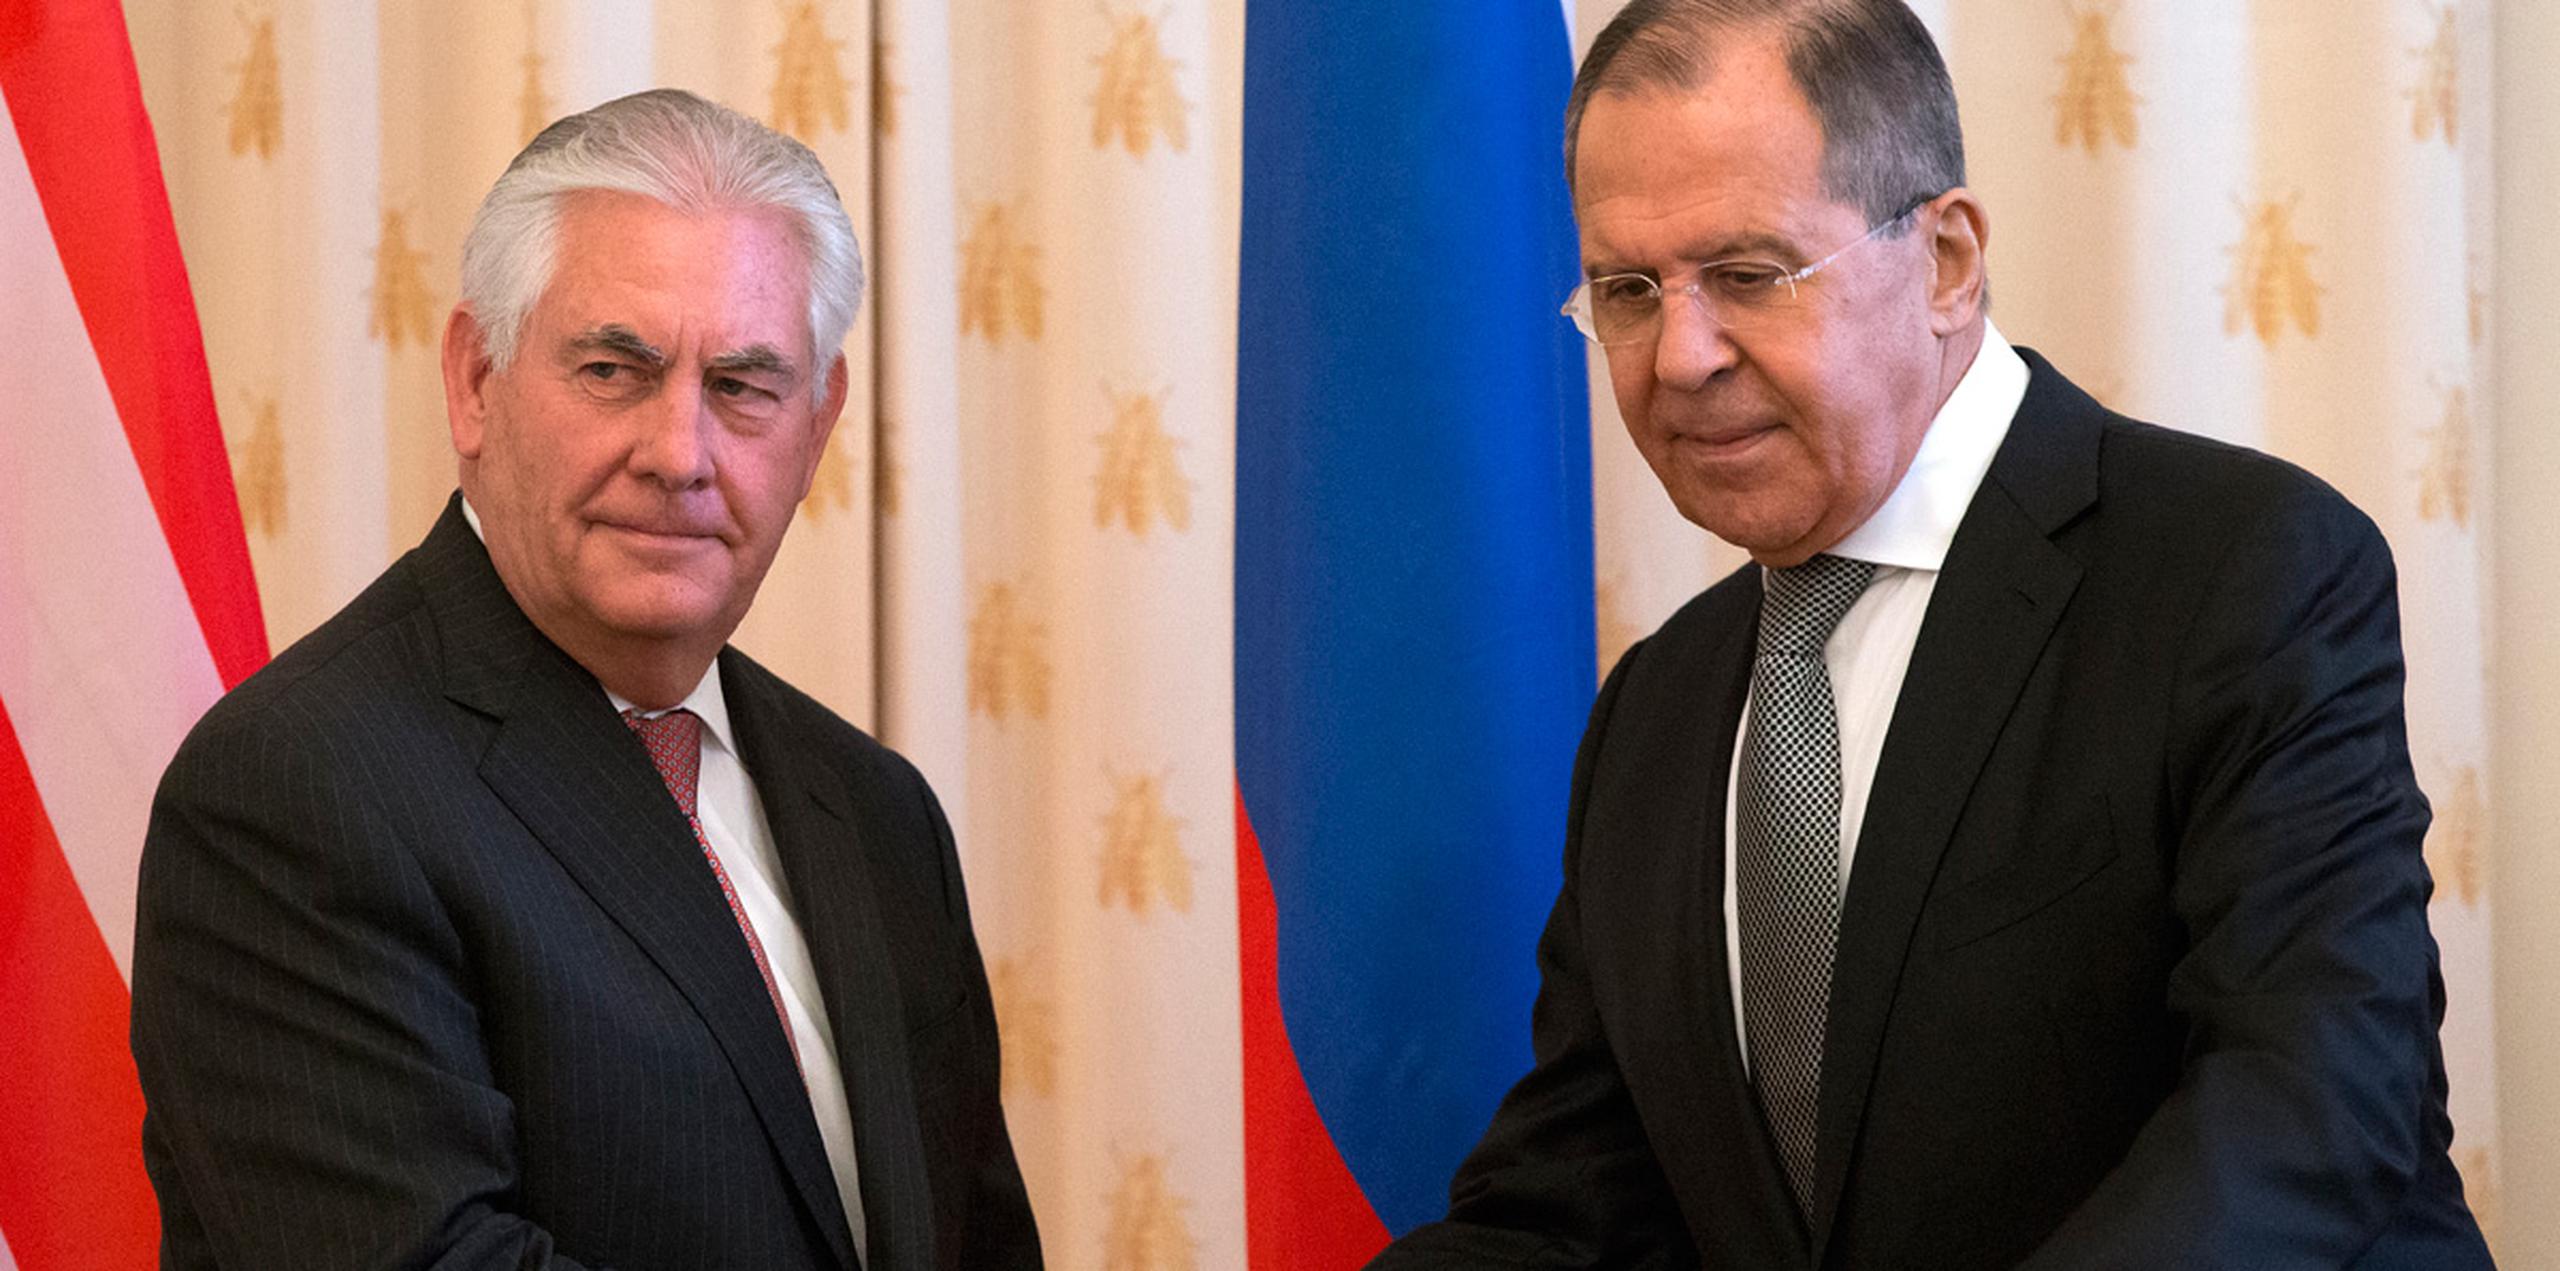 Tillerson se reunió el miércoles con el ministro ruso de Exteriores, Sergey Lavrov, un veterano diplomático cuya encendida defensa de las políticas de Putin ha frustrado a varios predecesores de Tillerson. (AP)